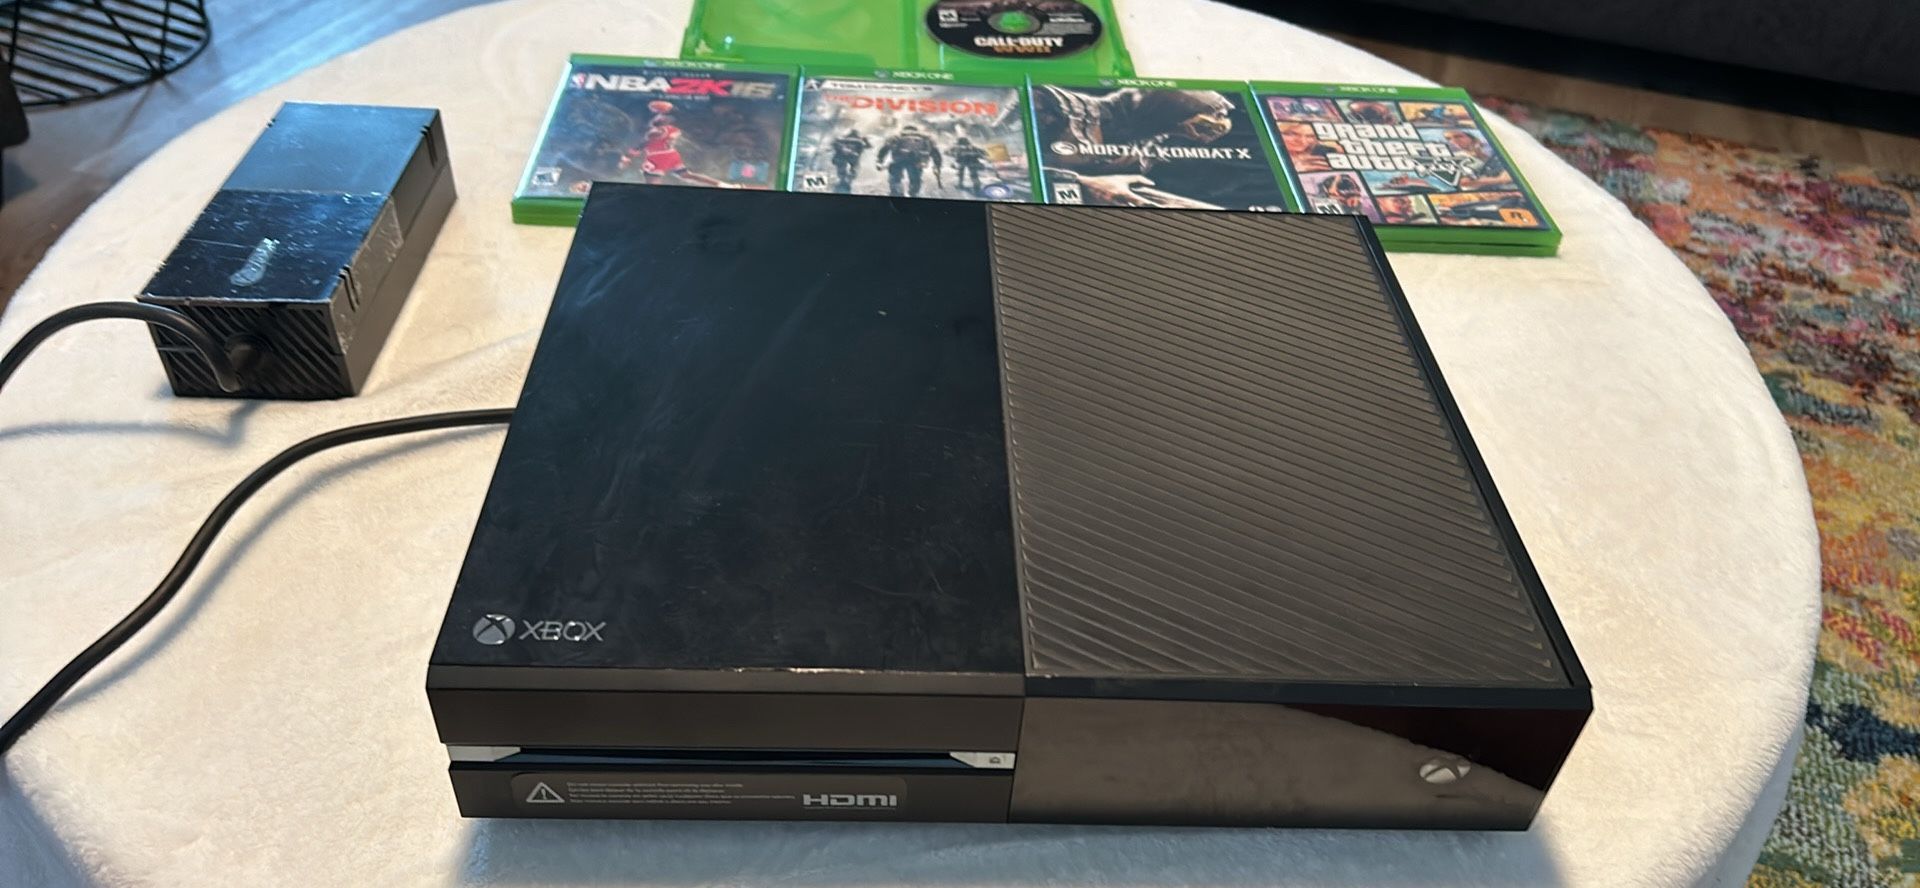 Microsoft Xbox One 500GB Home Console Model 1540 